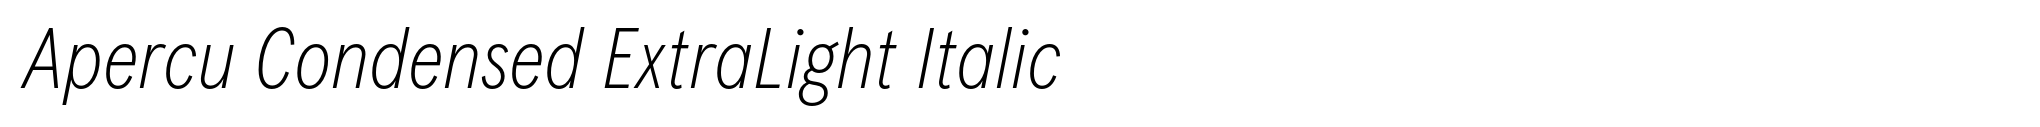 Apercu Condensed ExtraLight Italic image